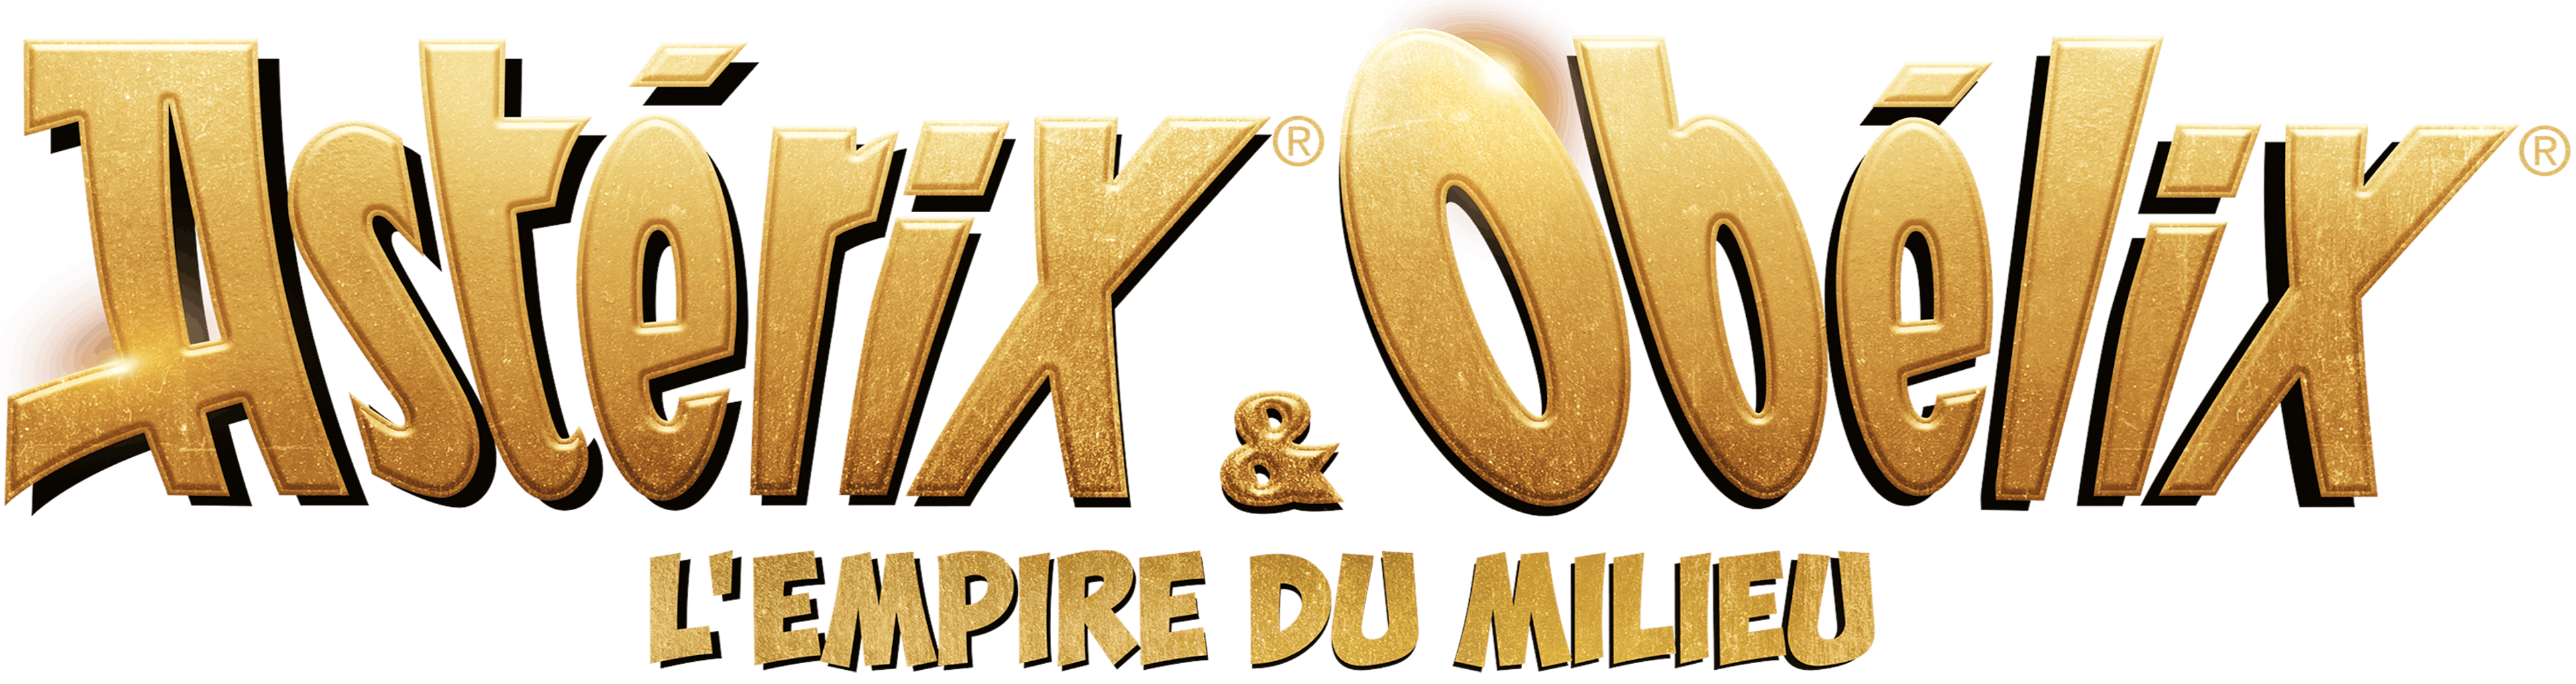 Astérix & Obélix : L'Empire du milieu